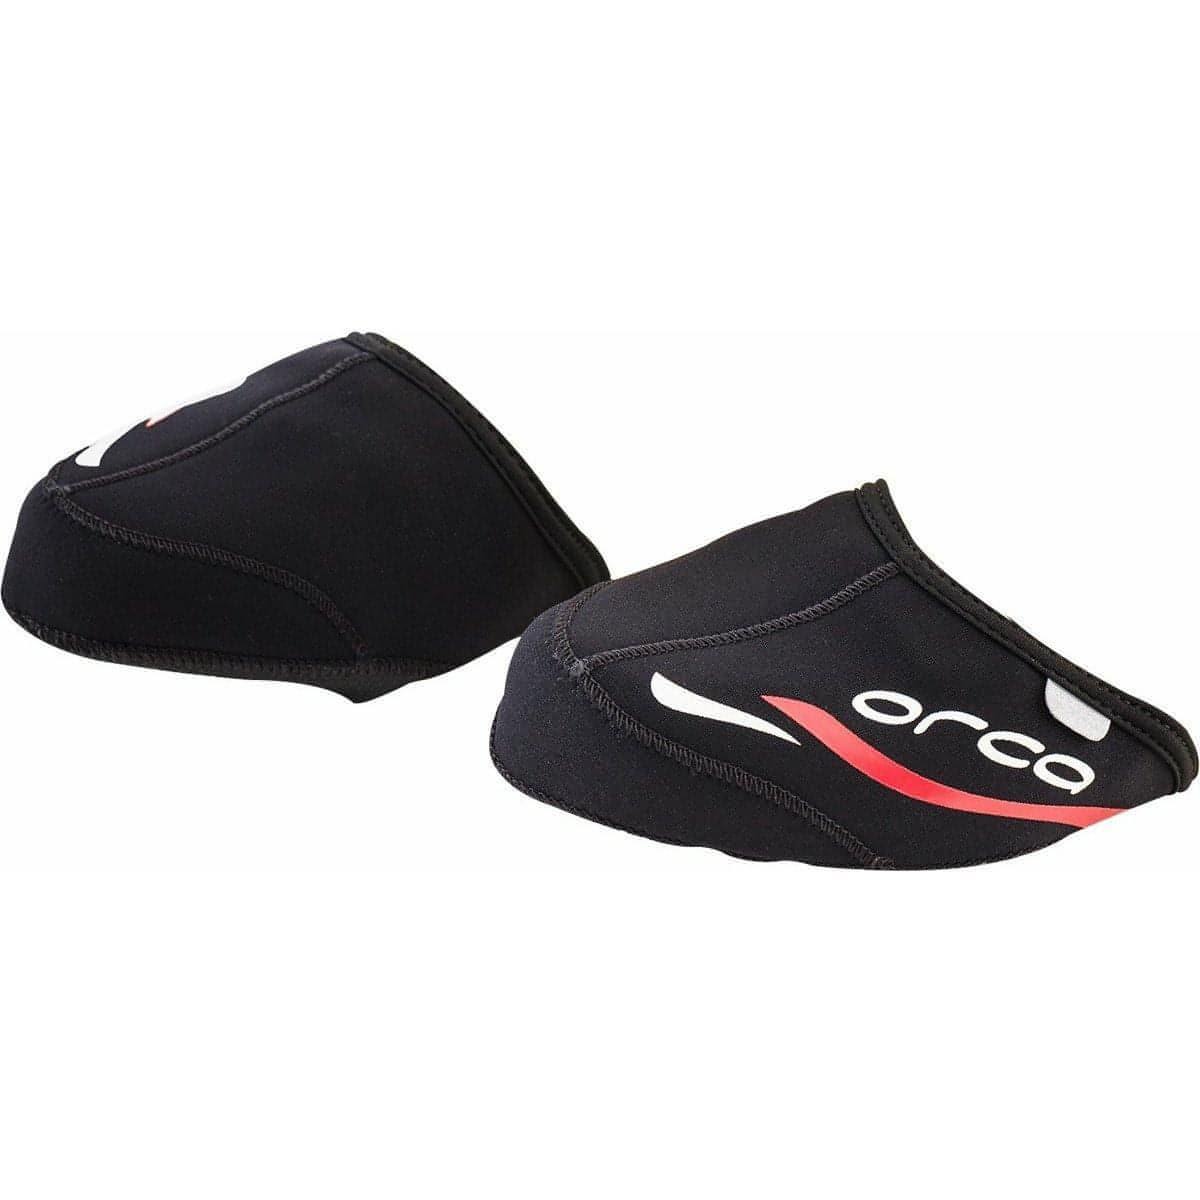 Orca Neoprene Toe Covers - Black - Start Fitness